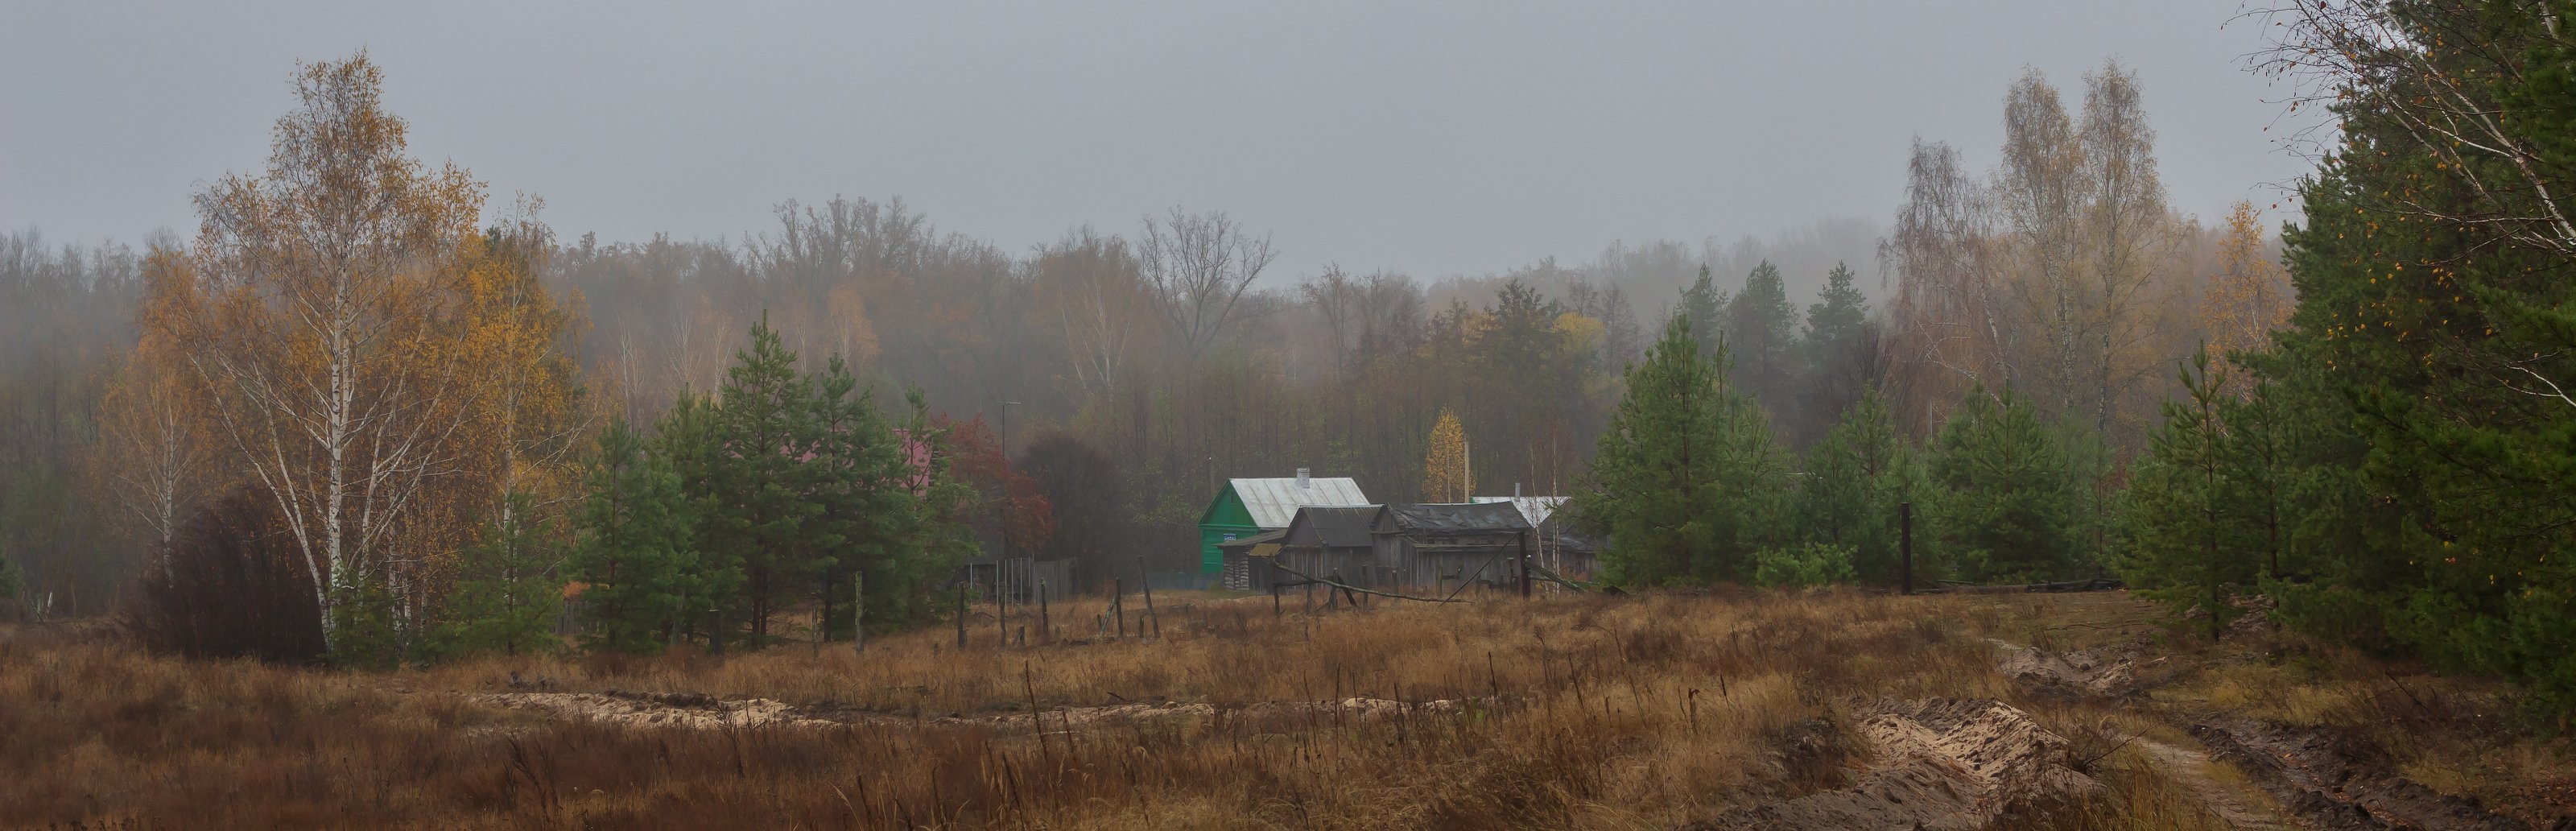 осень, деревня, туман, октябрь, лес, Руслан Востриков